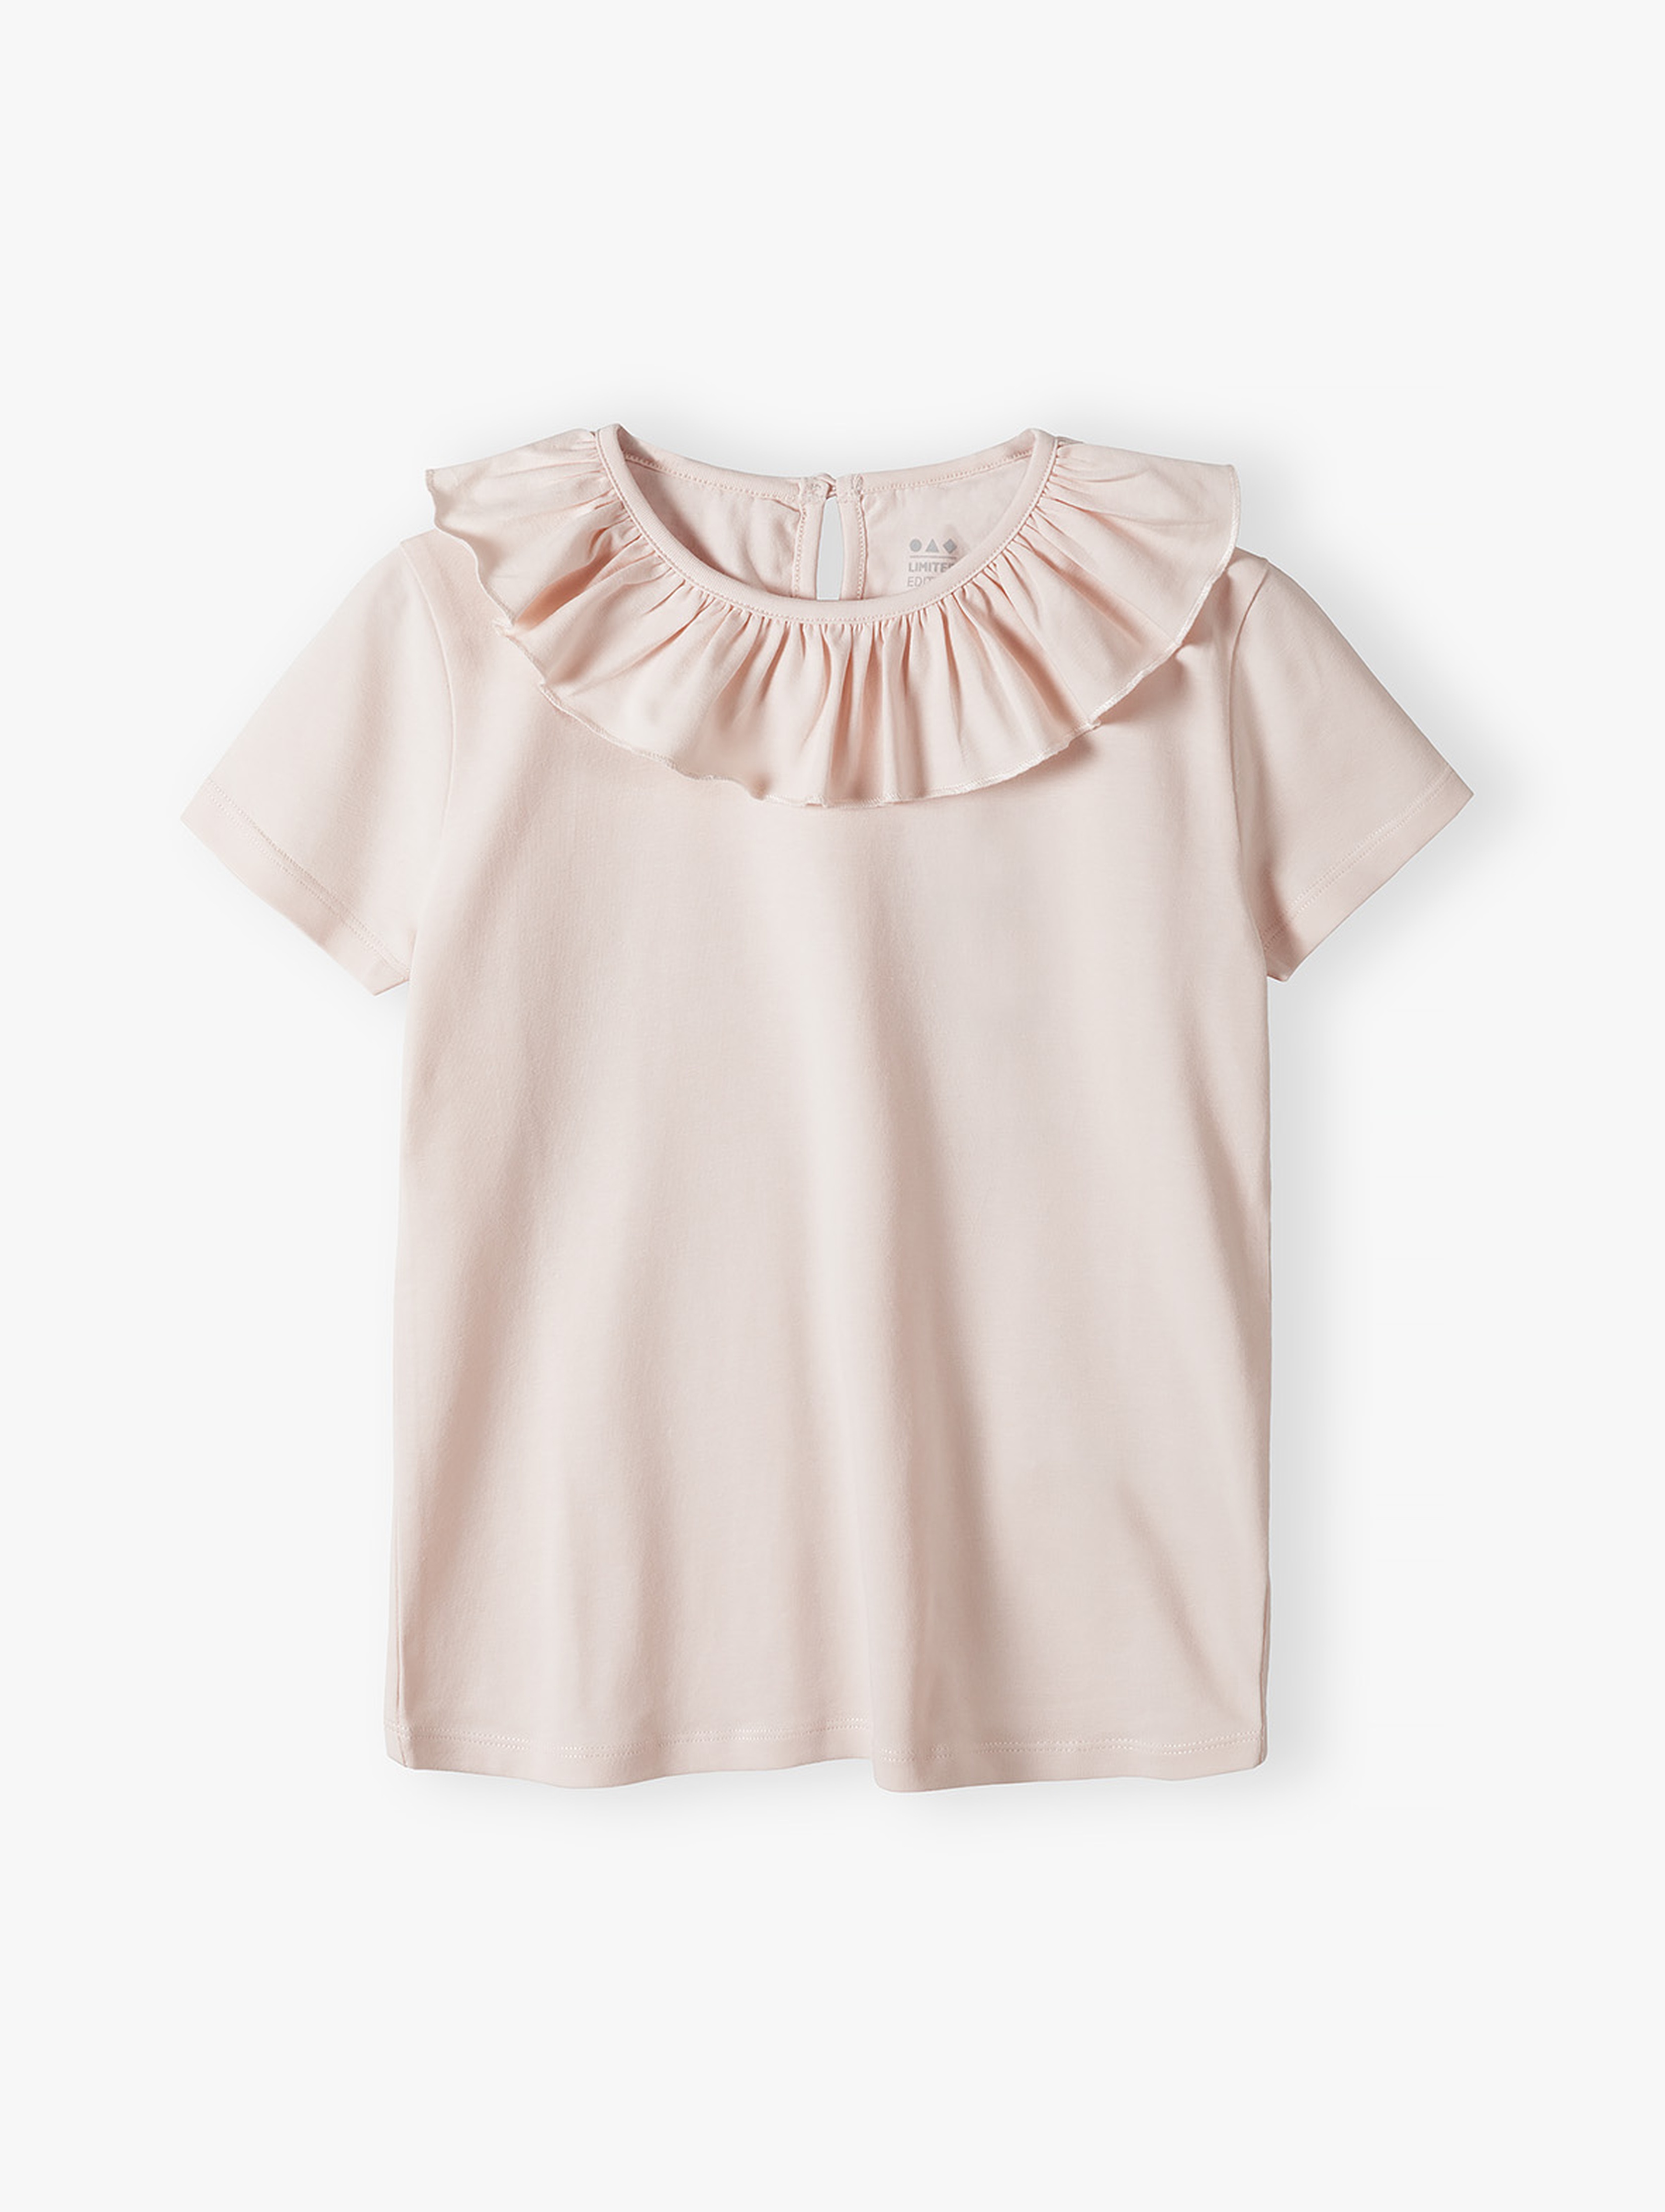 Różowa bluzka z krótkim rękawem - Limited Edition